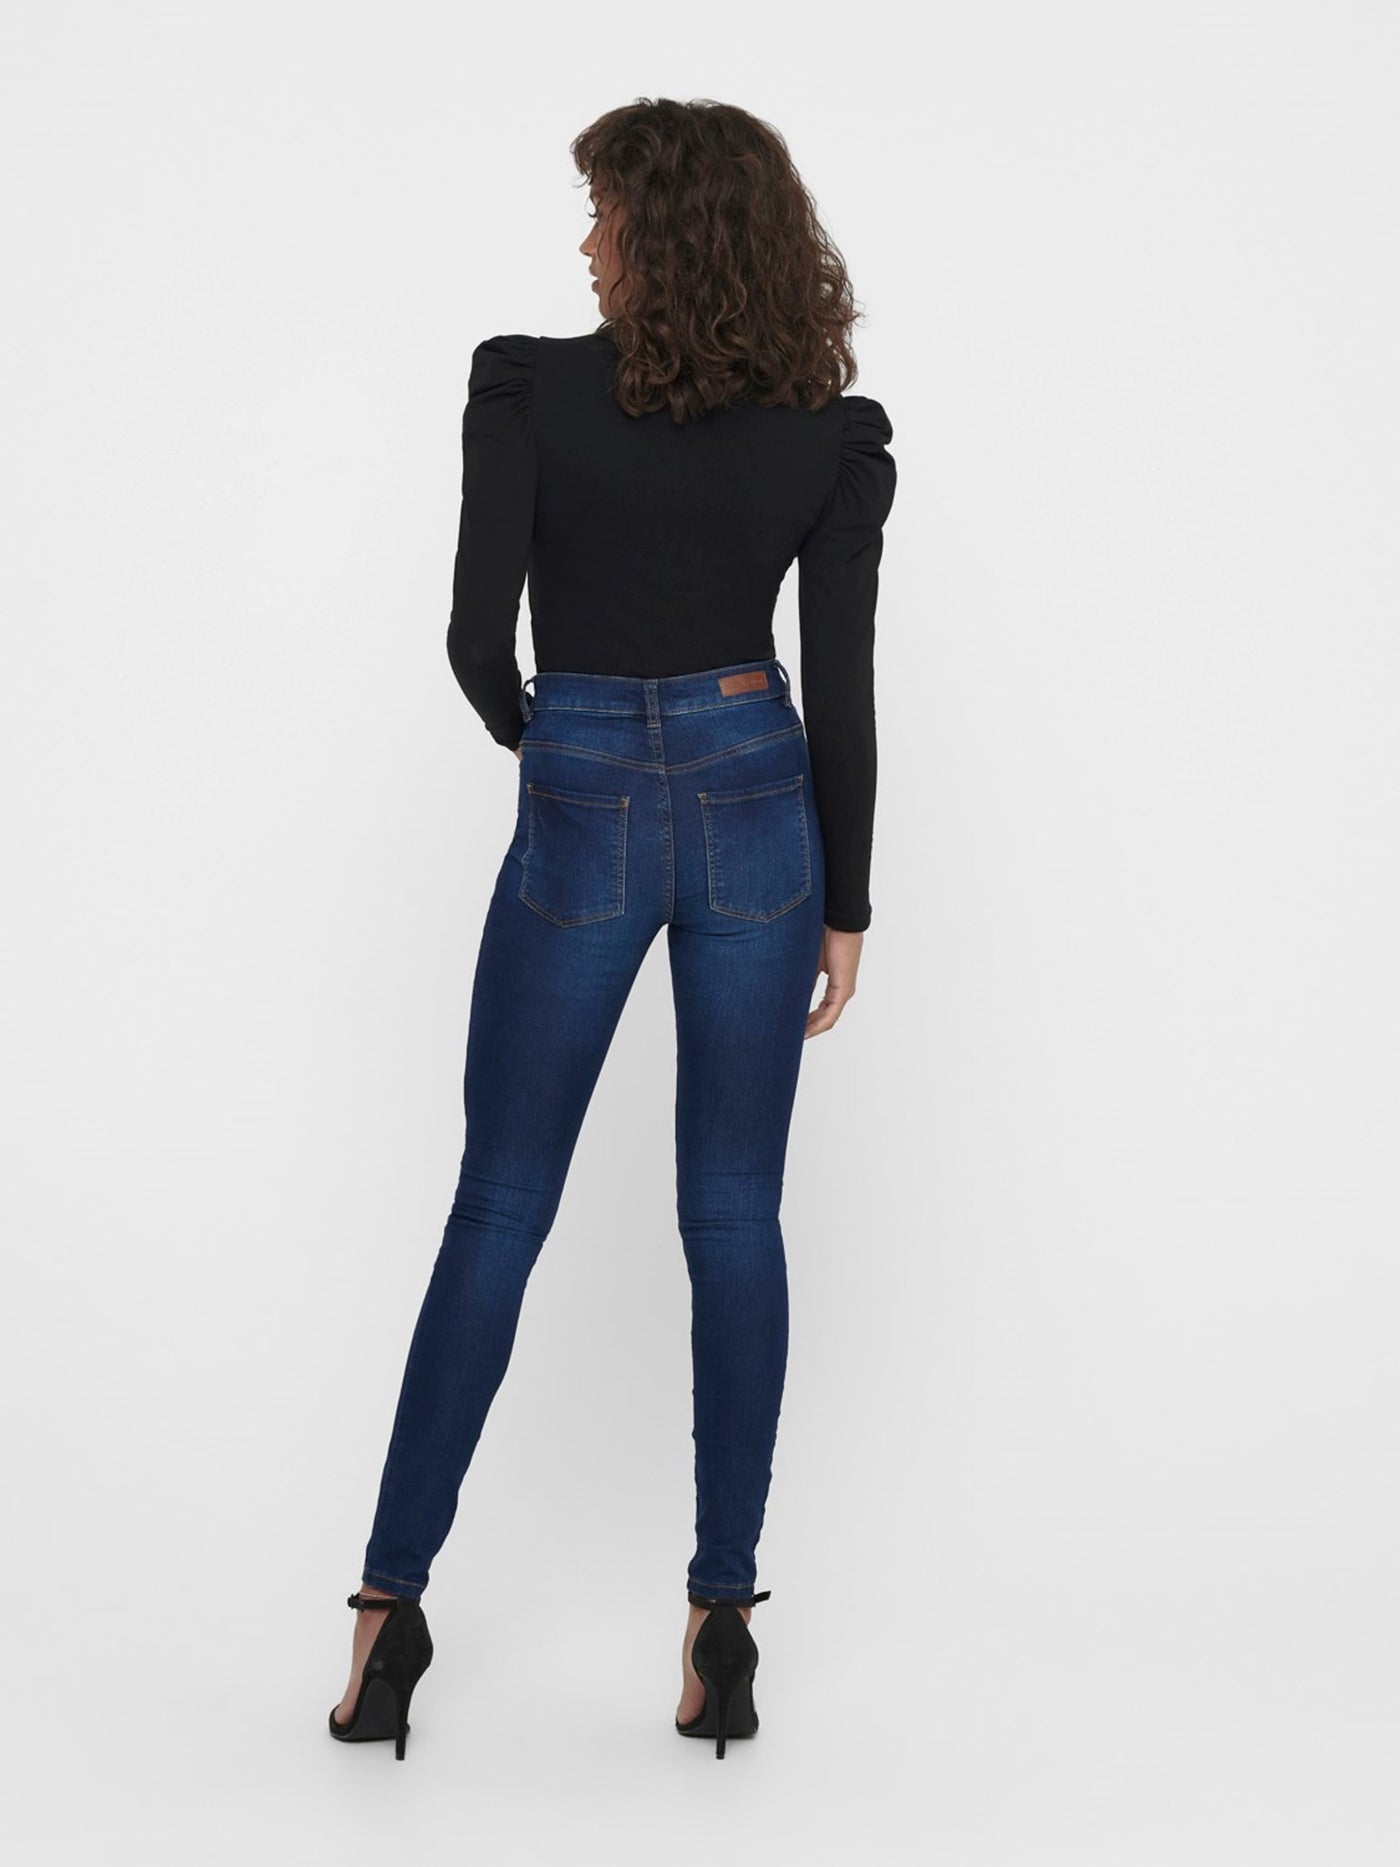 Performance Jeans - Blå denim (high waist) - Jacqueline de Yong 2